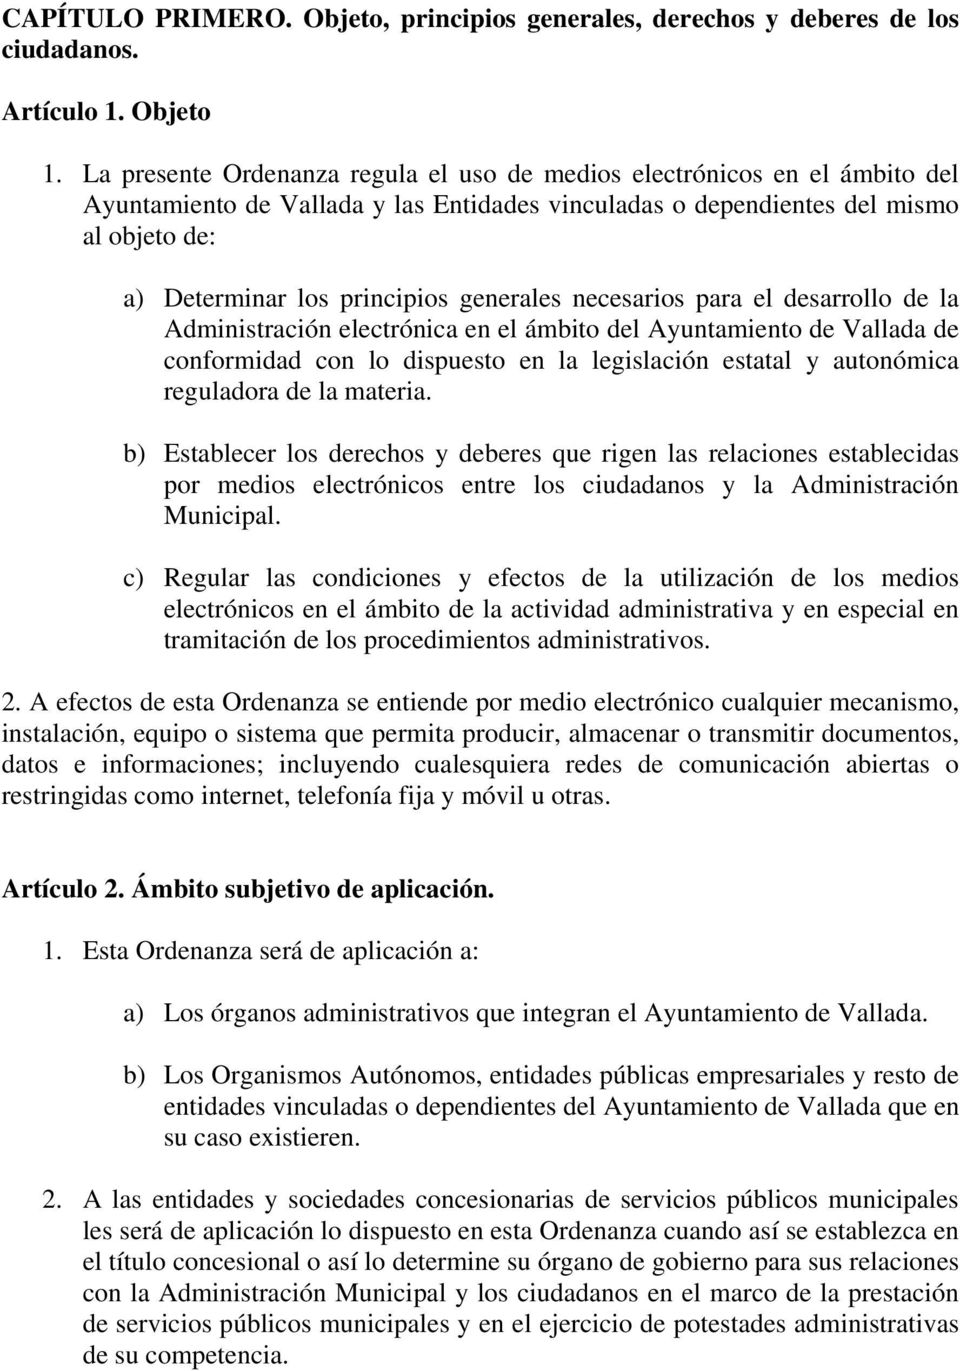 generales necesarios para el desarrollo de la Administración electrónica en el ámbito del Ayuntamiento de Vallada de conformidad con lo dispuesto en la legislación estatal y autonómica reguladora de